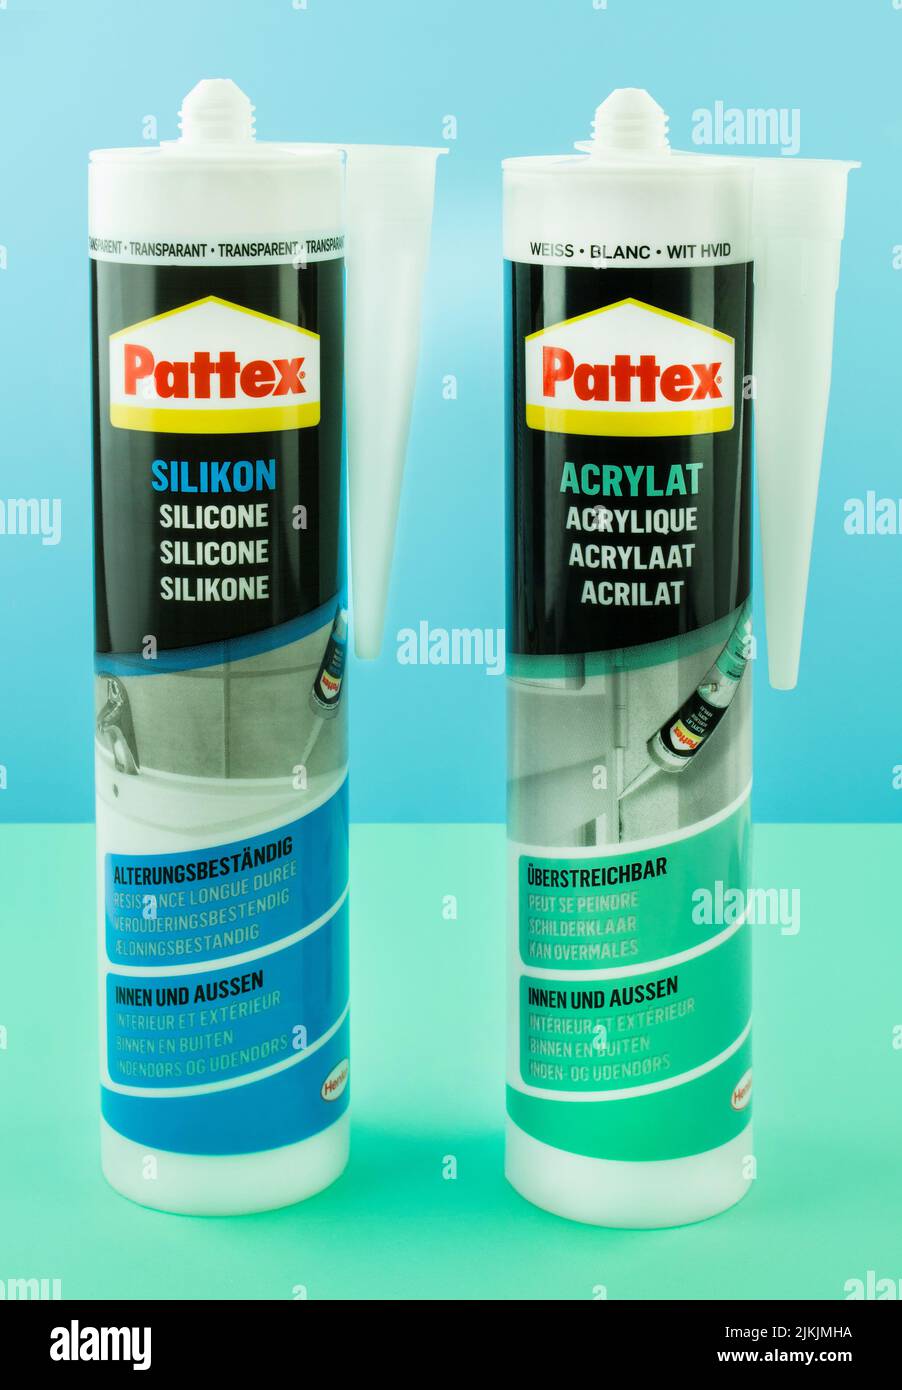 Pattex Silikon und Acrylat von Henkel Foto de stock